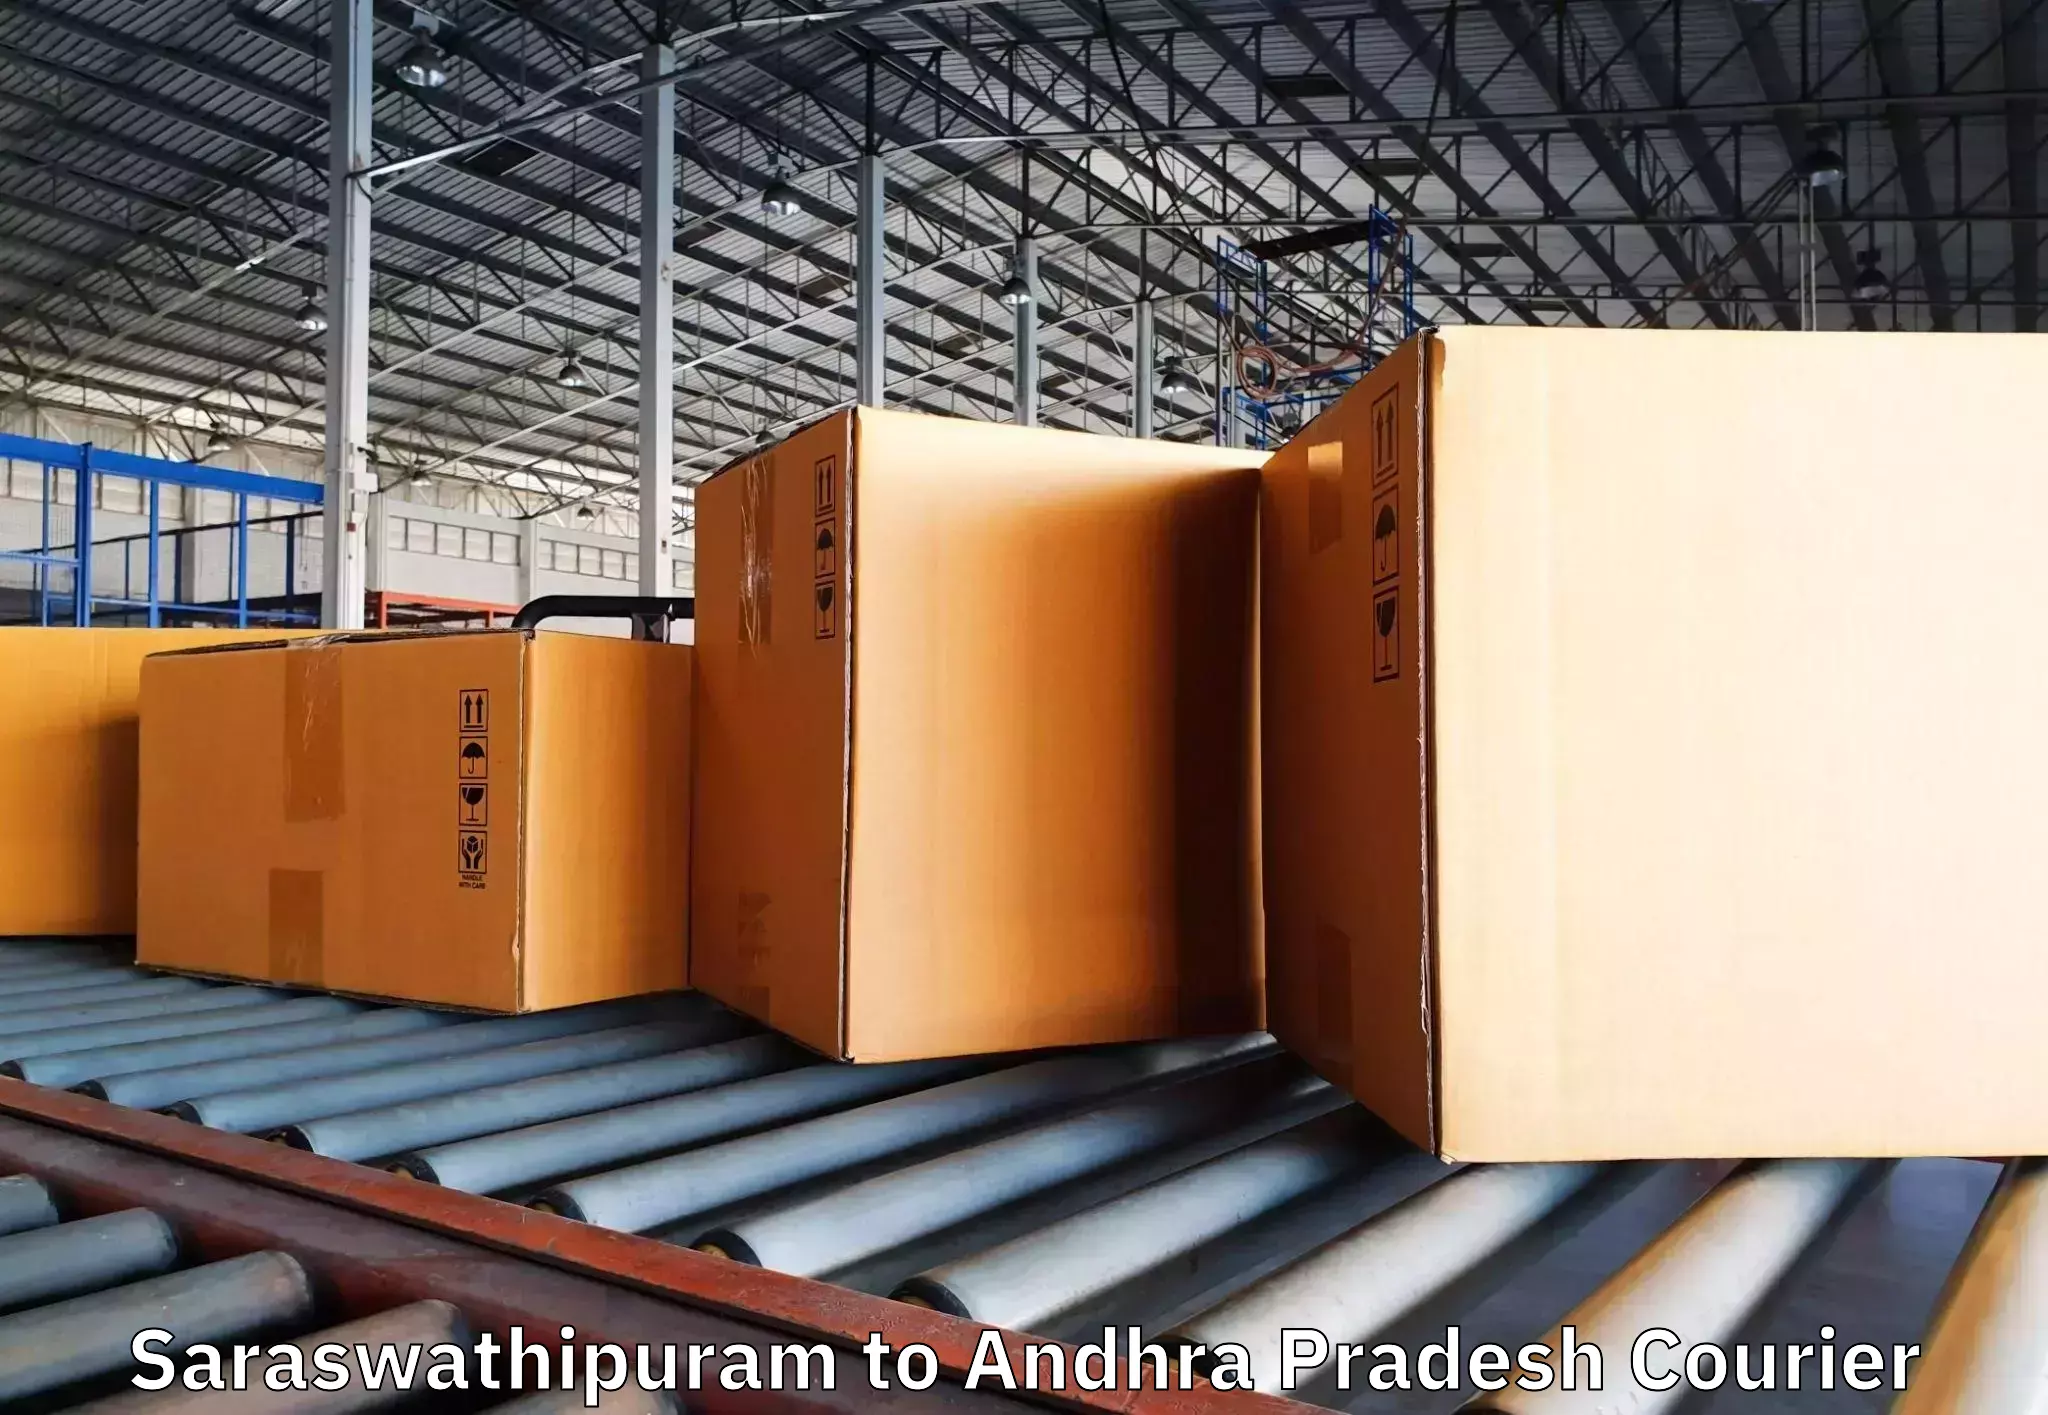 Furniture transport solutions Saraswathipuram to Rayachoti